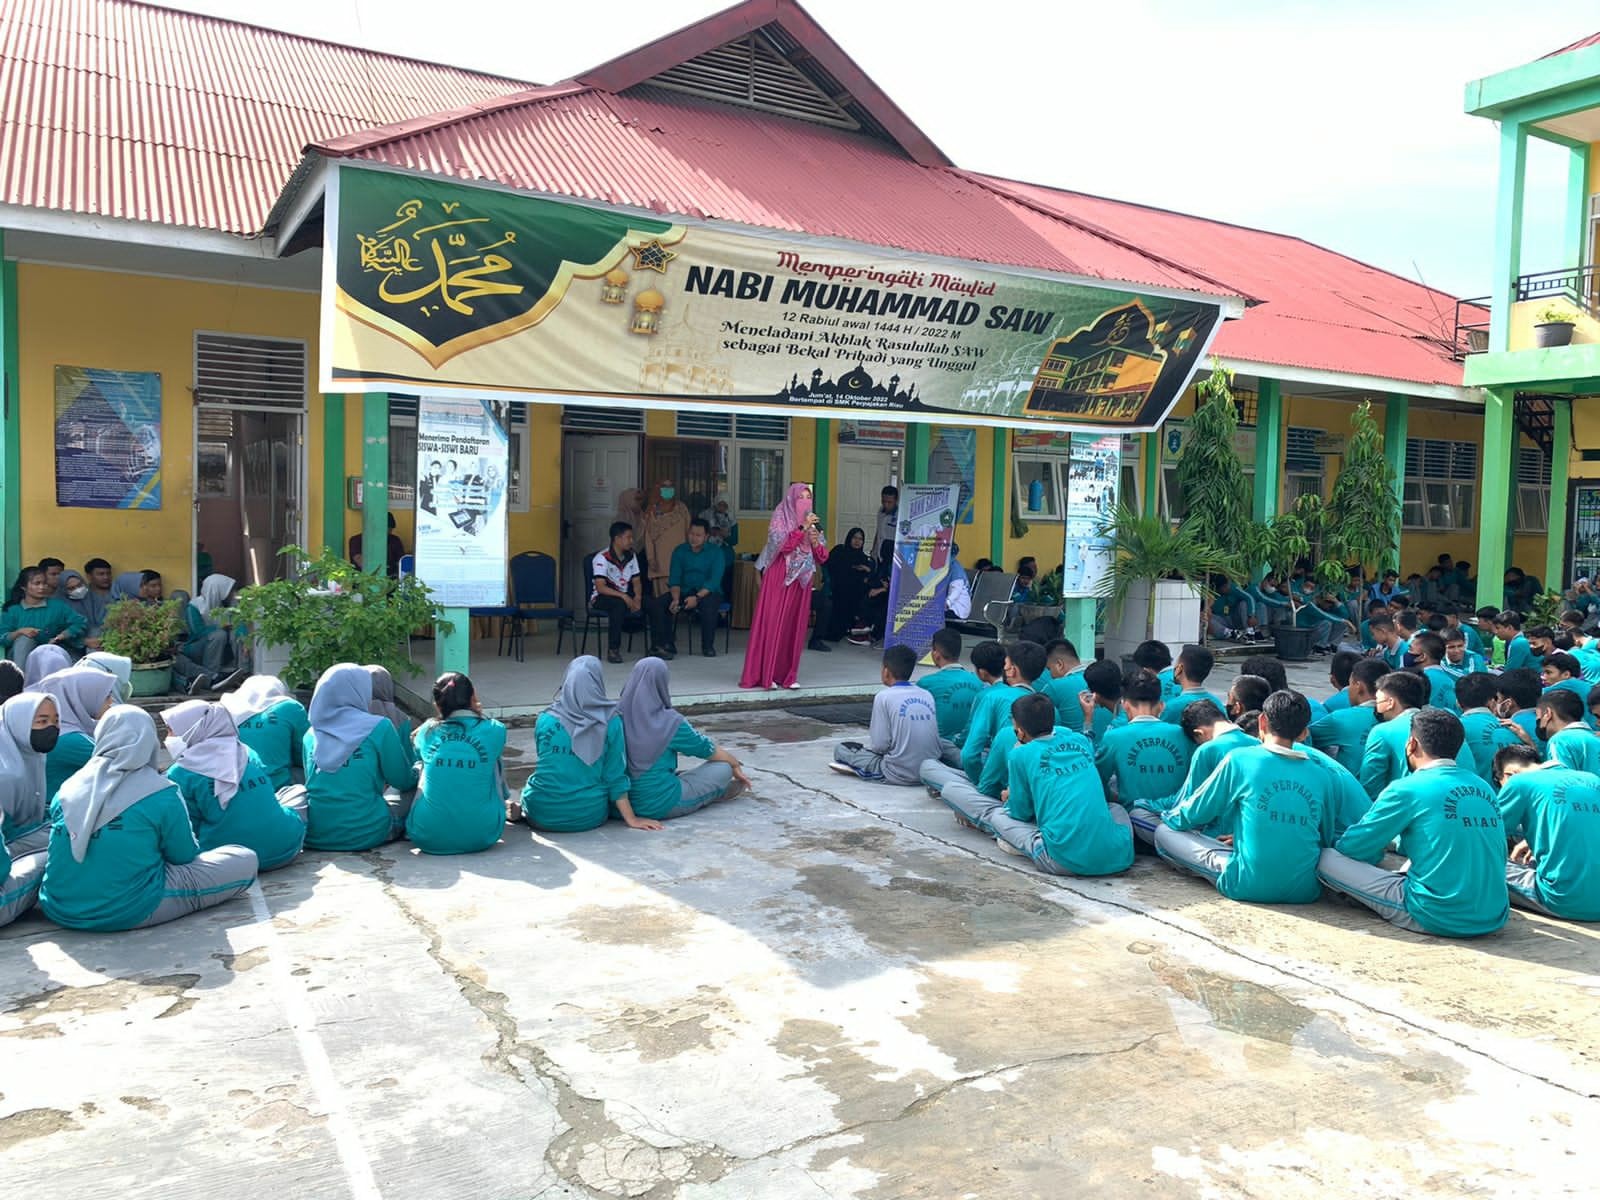 Upaya Penguatan Karakter Kewirausahaan Bagi Siswa SMK Perpajakan Riau Melalui Succes Story